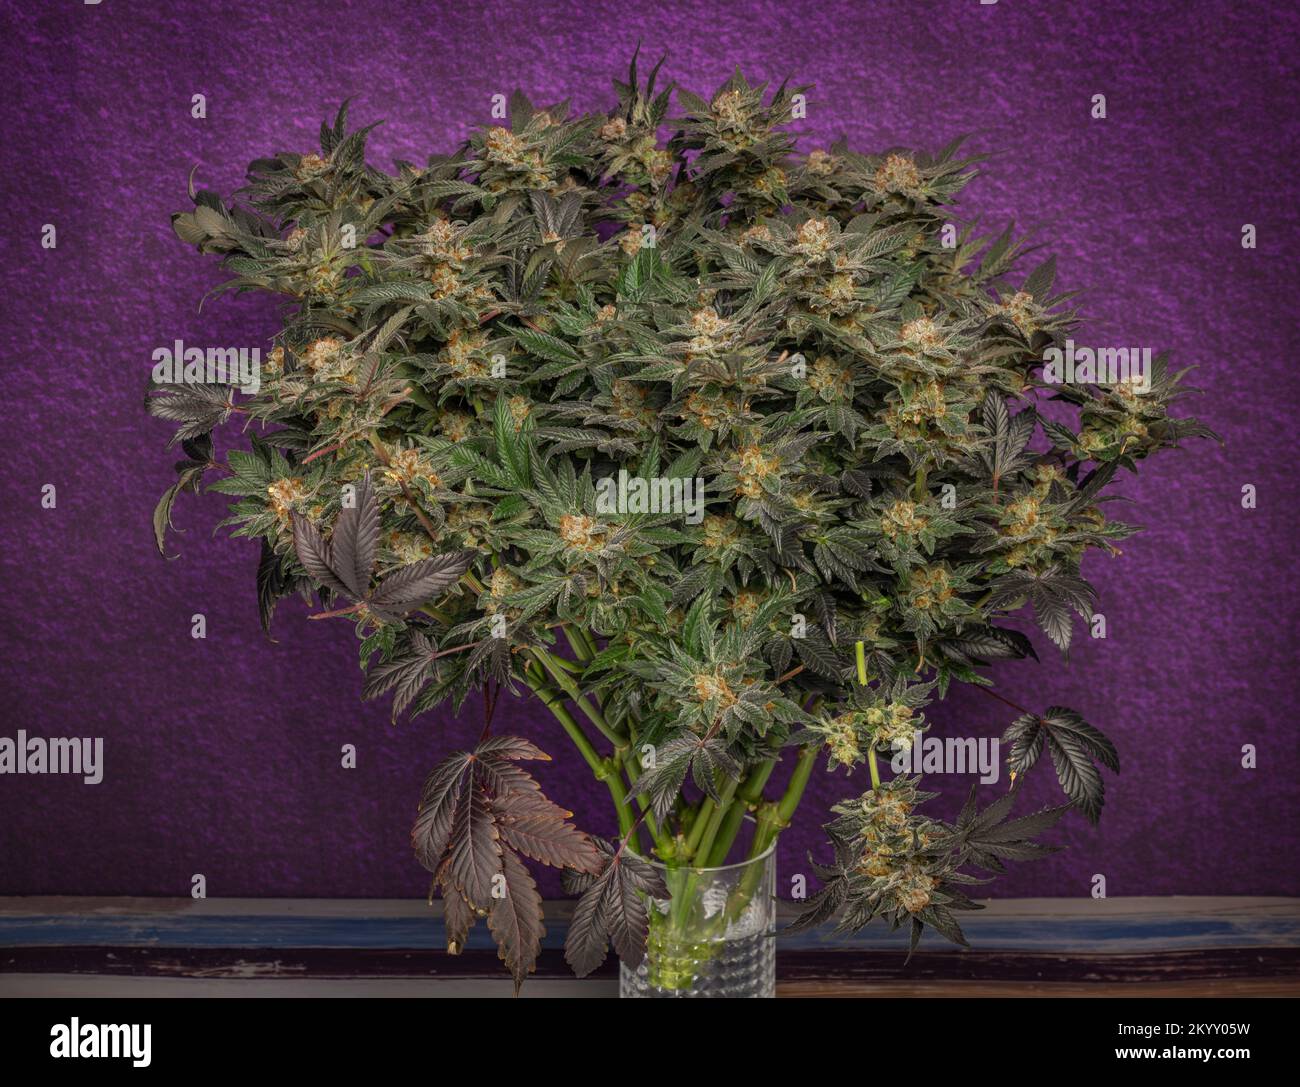 Mazzo di fiori di marijuana fioriture maturate con fondo viola scuro Foto Stock